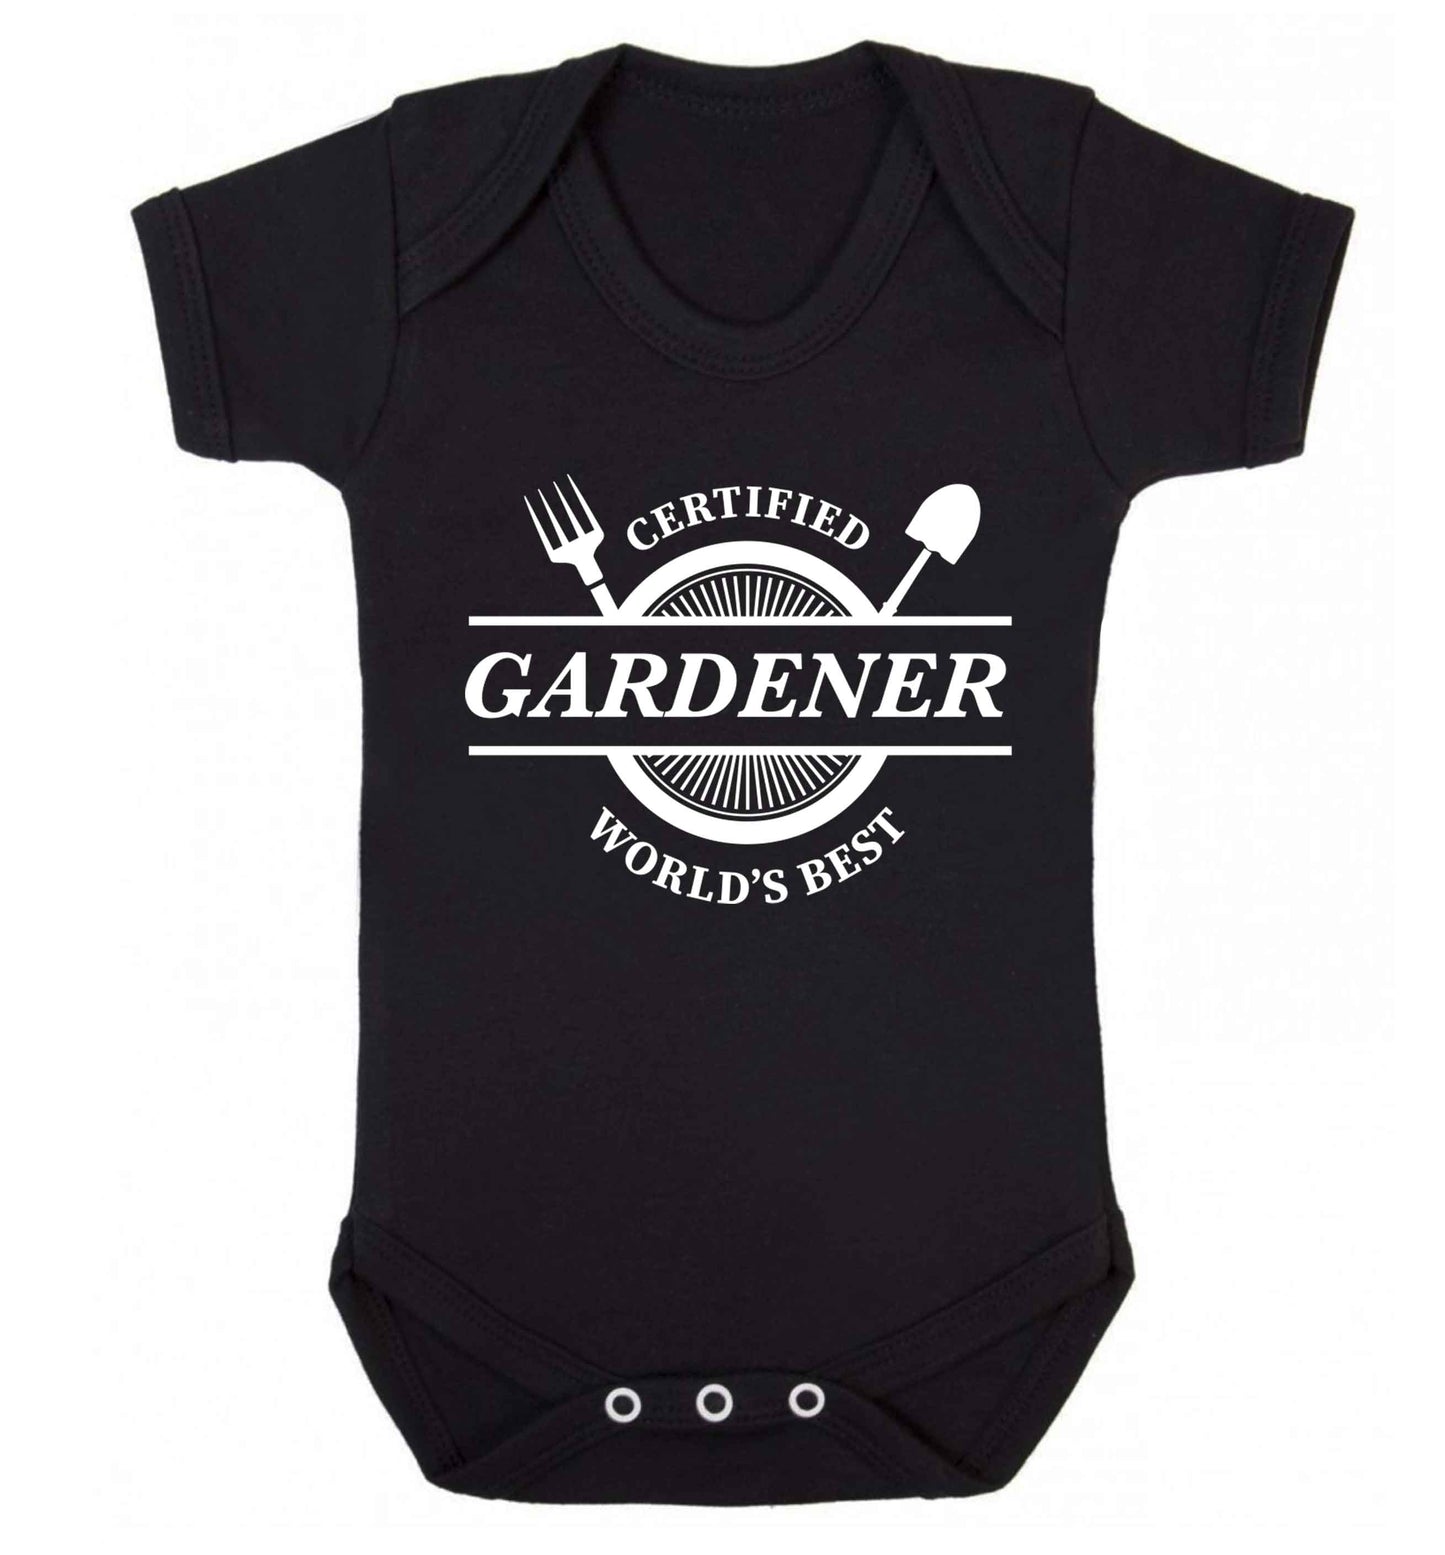 Certified gardener worlds best Baby Vest black 18-24 months